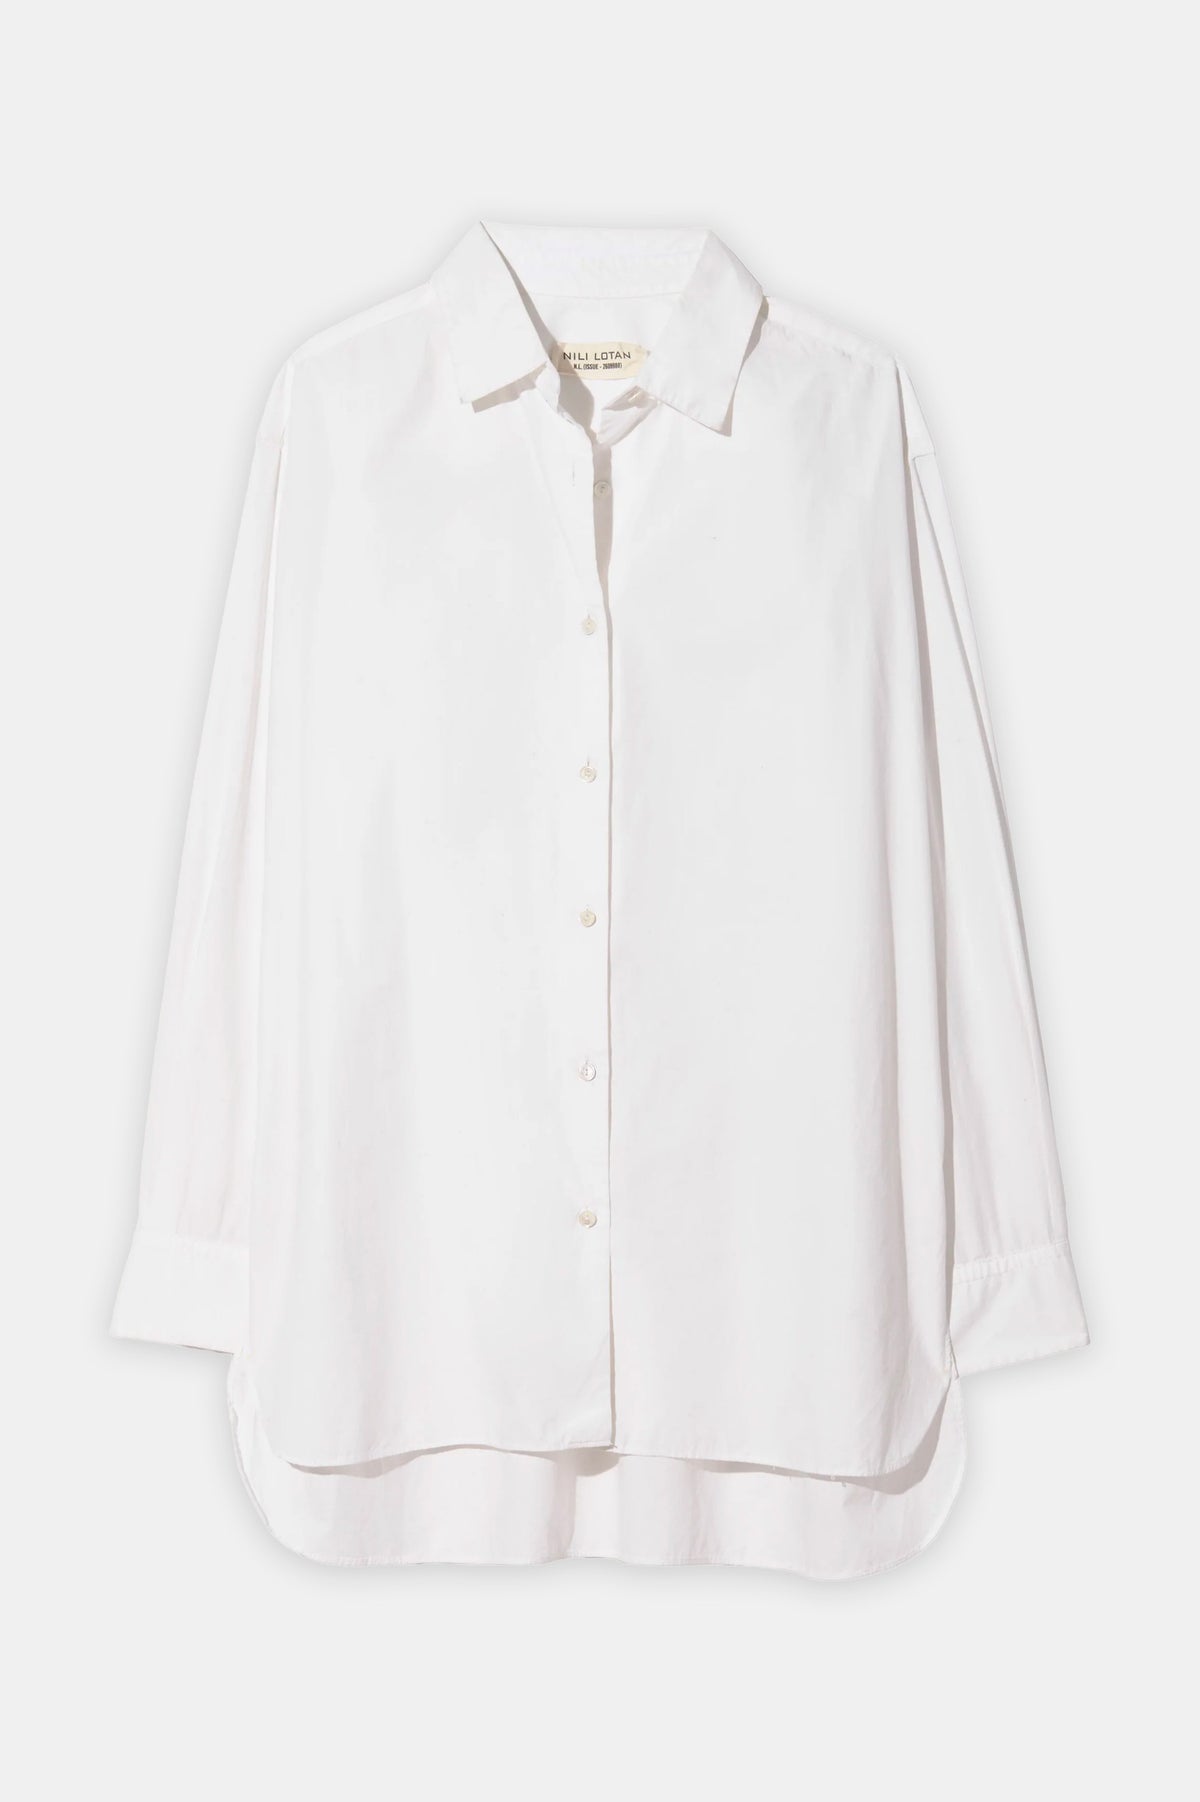 Yorke Shirt in White